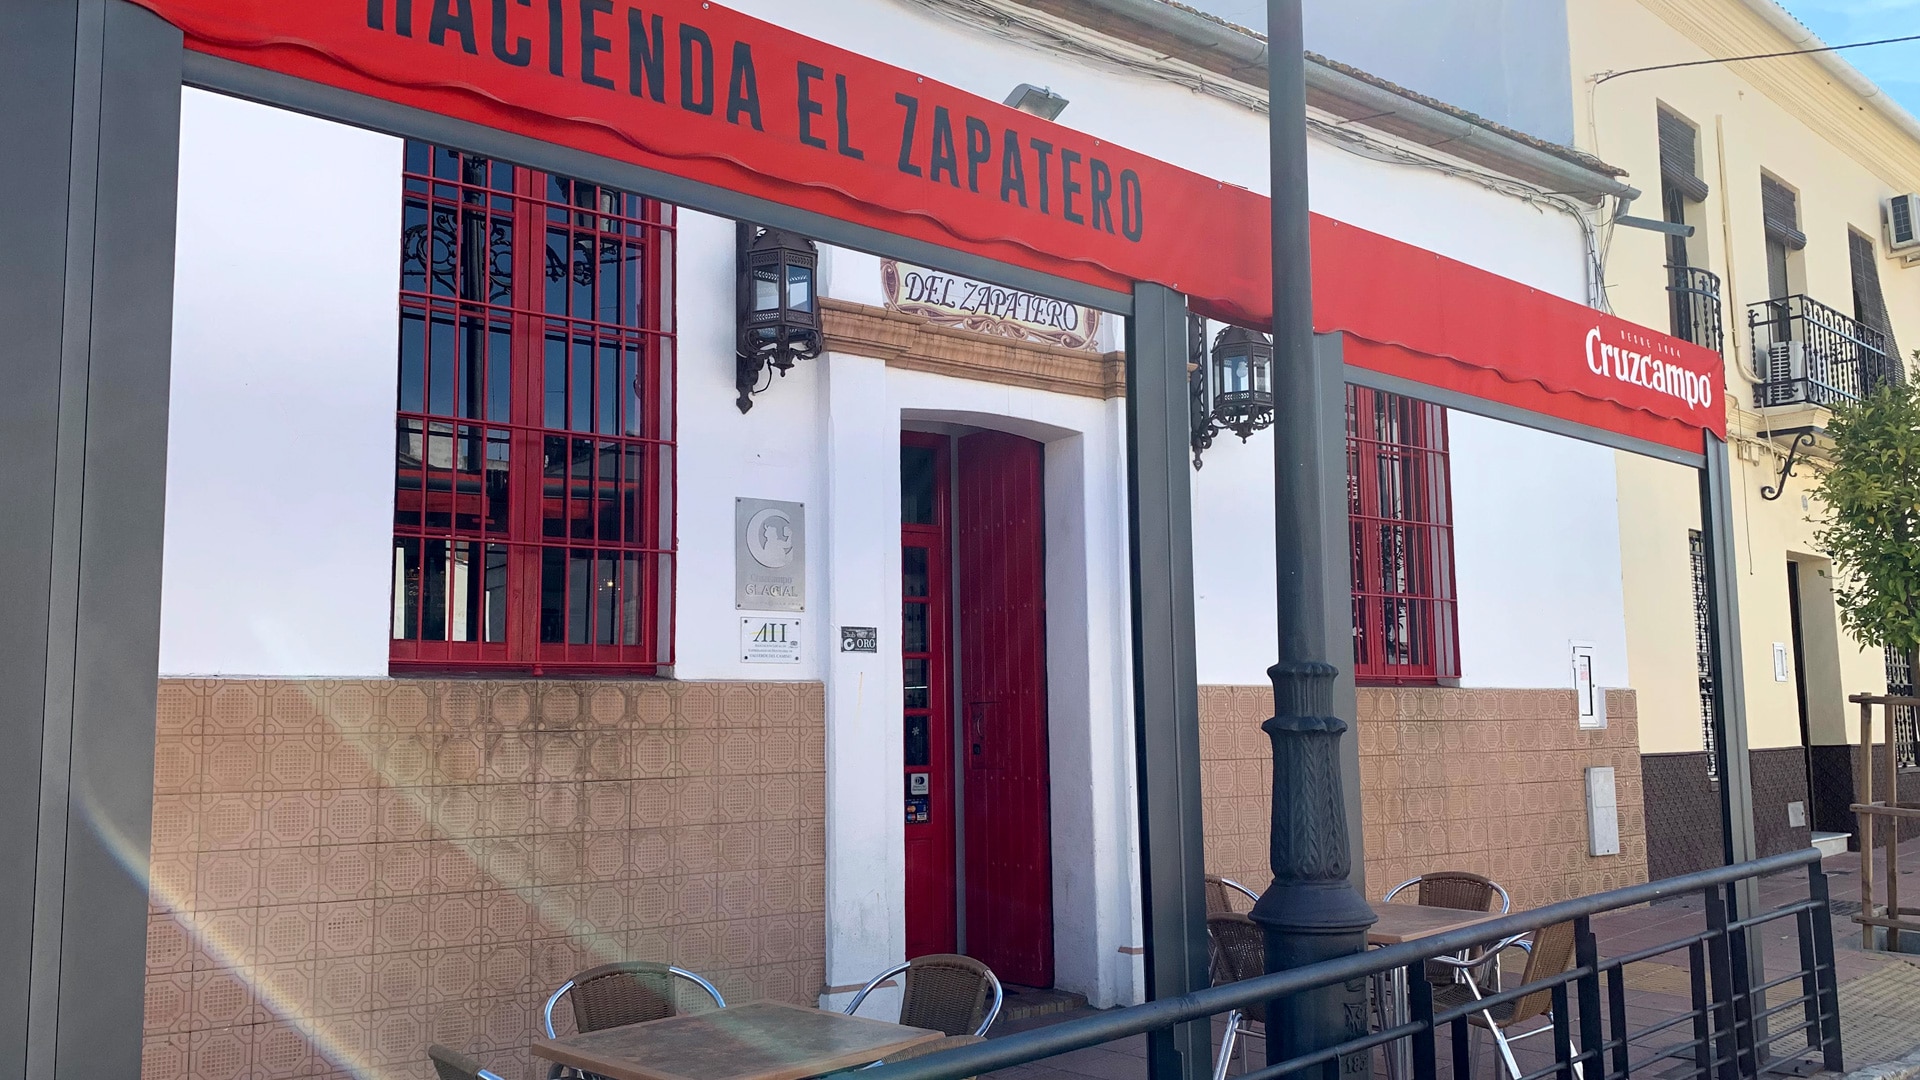 La Hacienda del Zapatero | Instalaciones